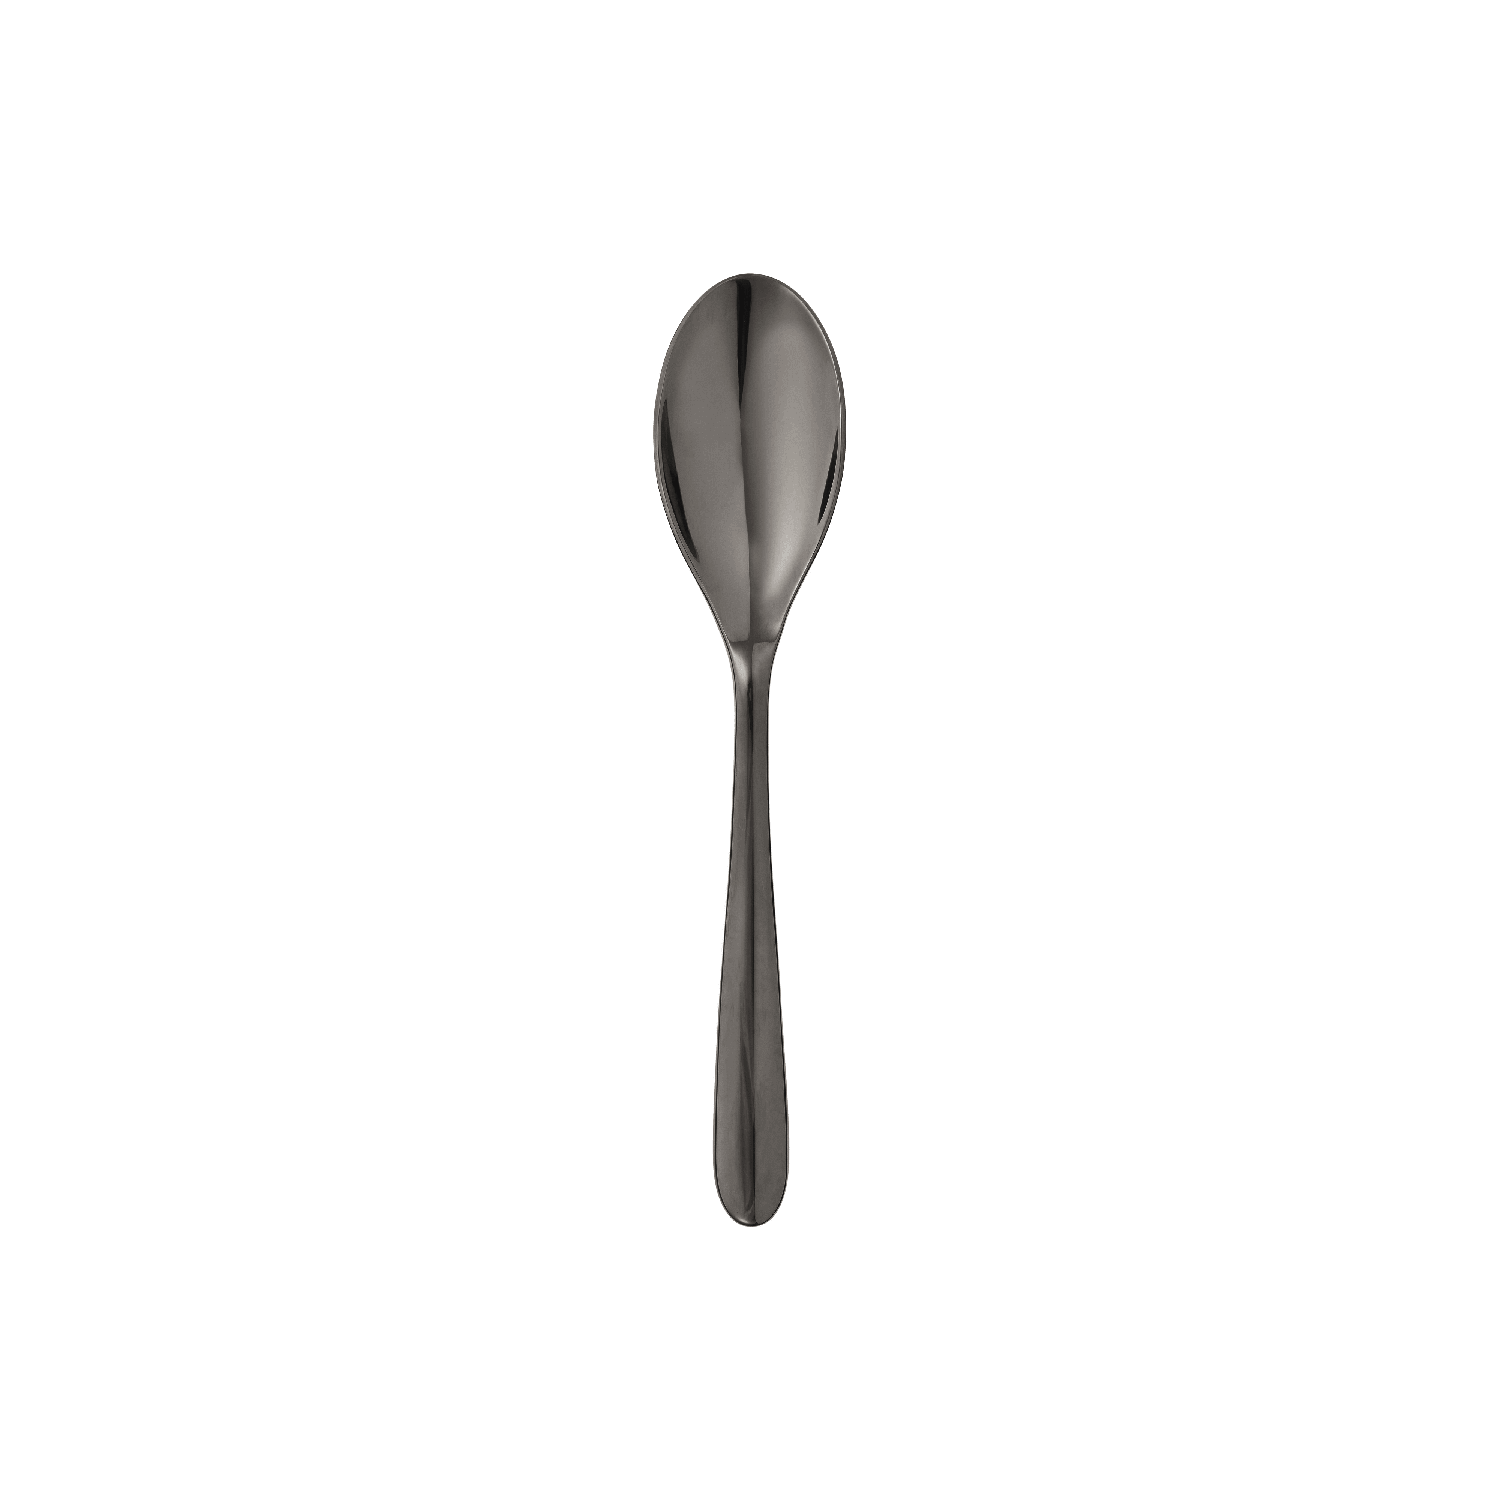 Black stainless steel coffee spoon